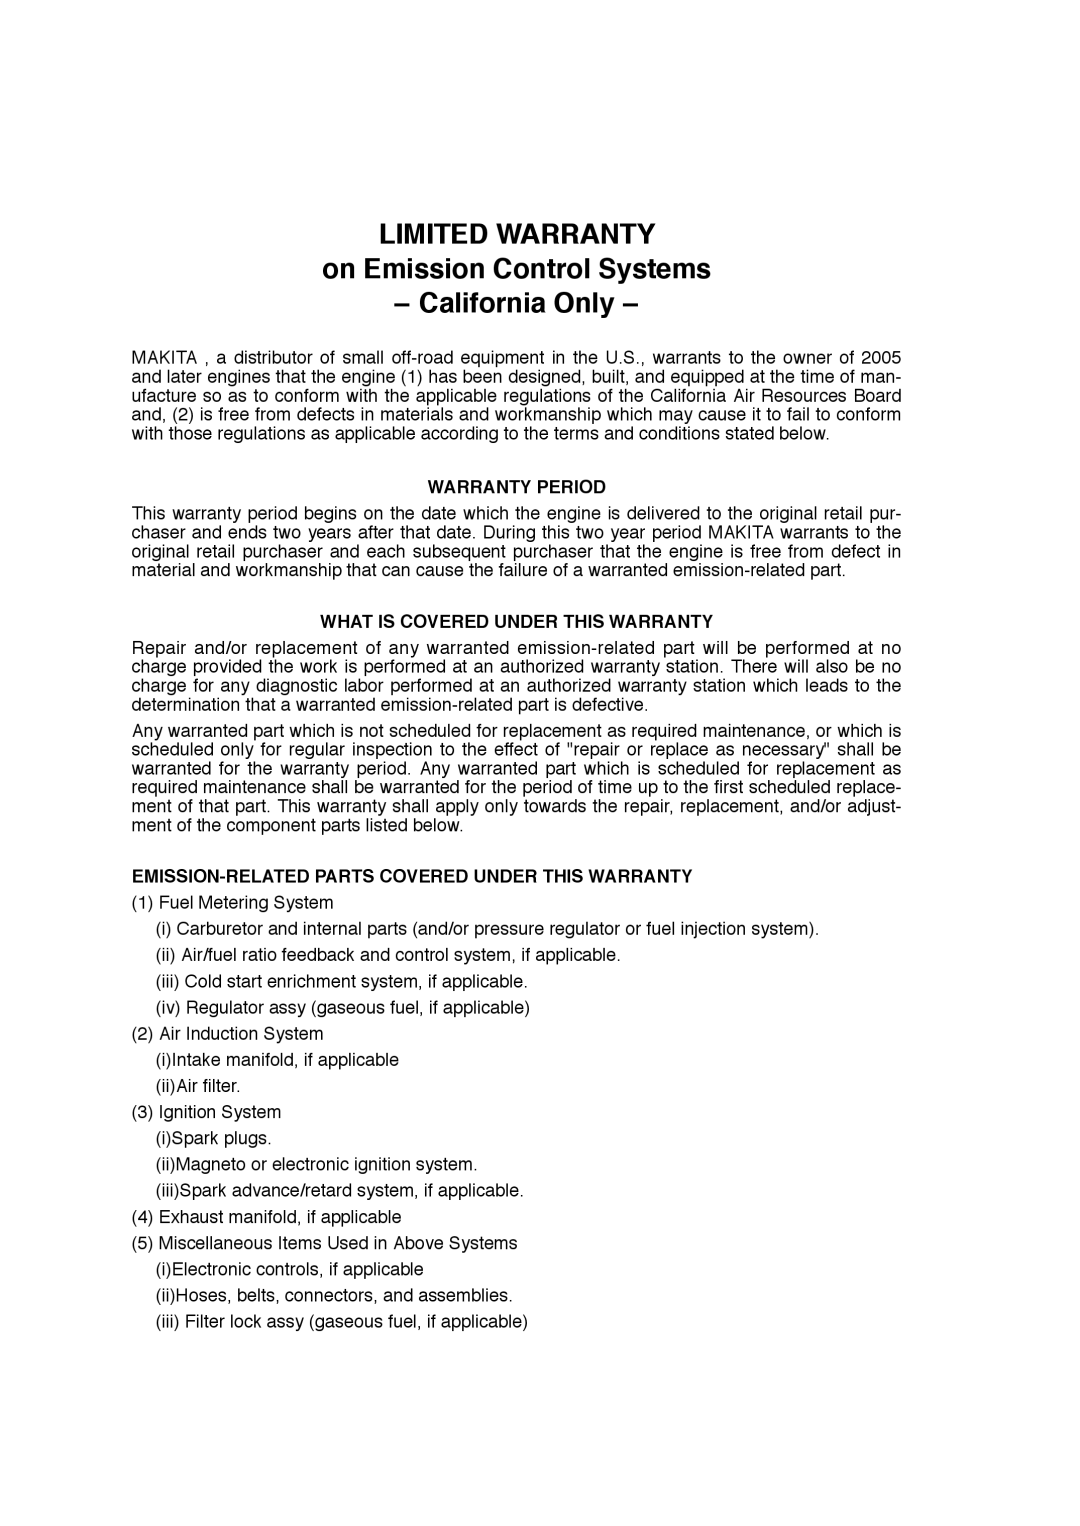 Makita EW220R, EW320TR, EW120R LIMITED WARRANTY on Emission Control Systems, California Only, Warranty Period 